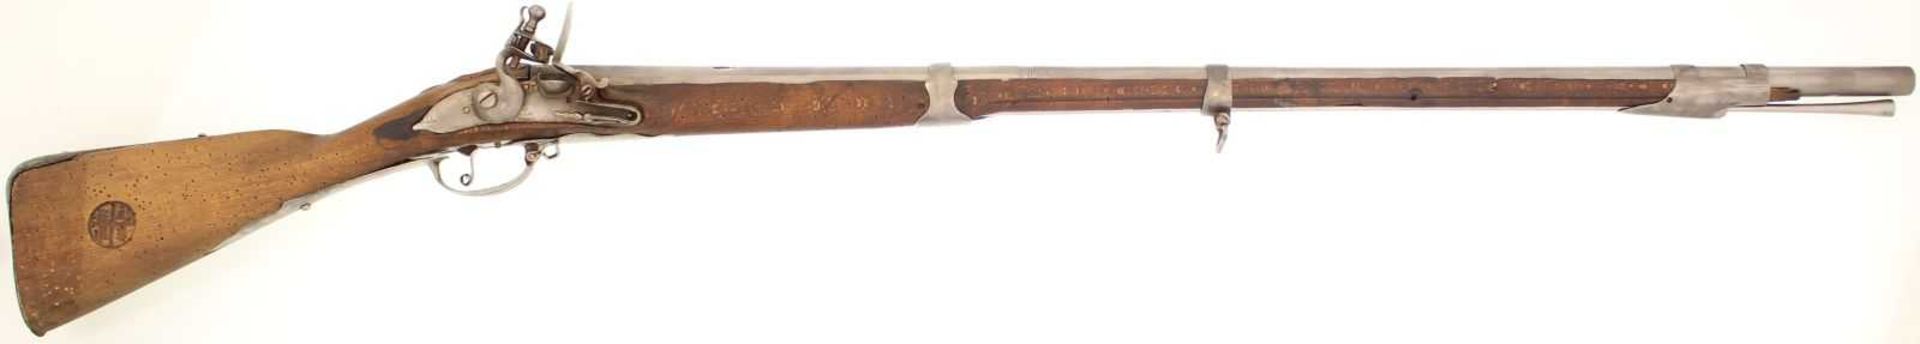 Steinschlossgewehr, deutsch oder österreichisch? um 1740. Kal. 18mm, LL 101cm, TL 136cm. Hinterer